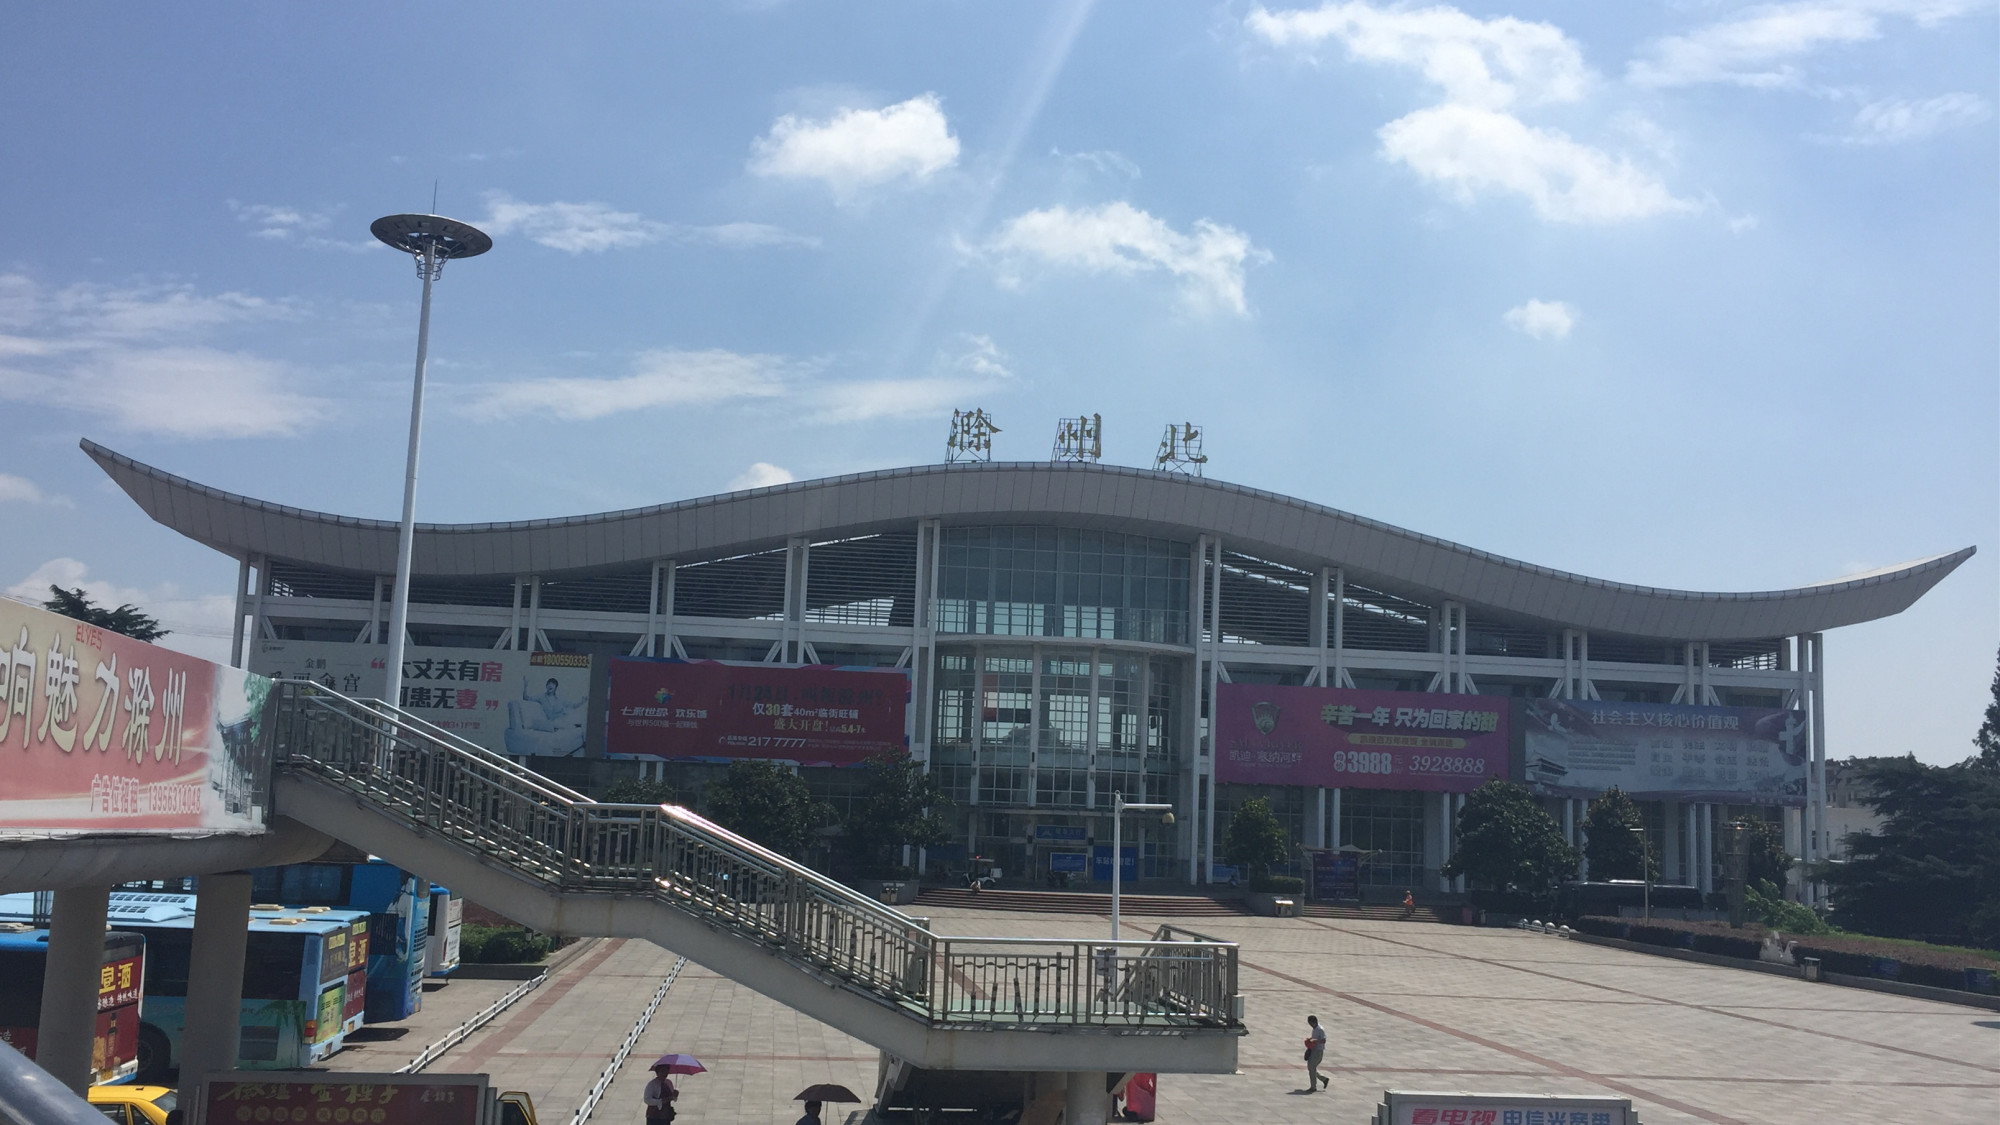 京沪铁路线上主要的客运车站之一——滁州北站